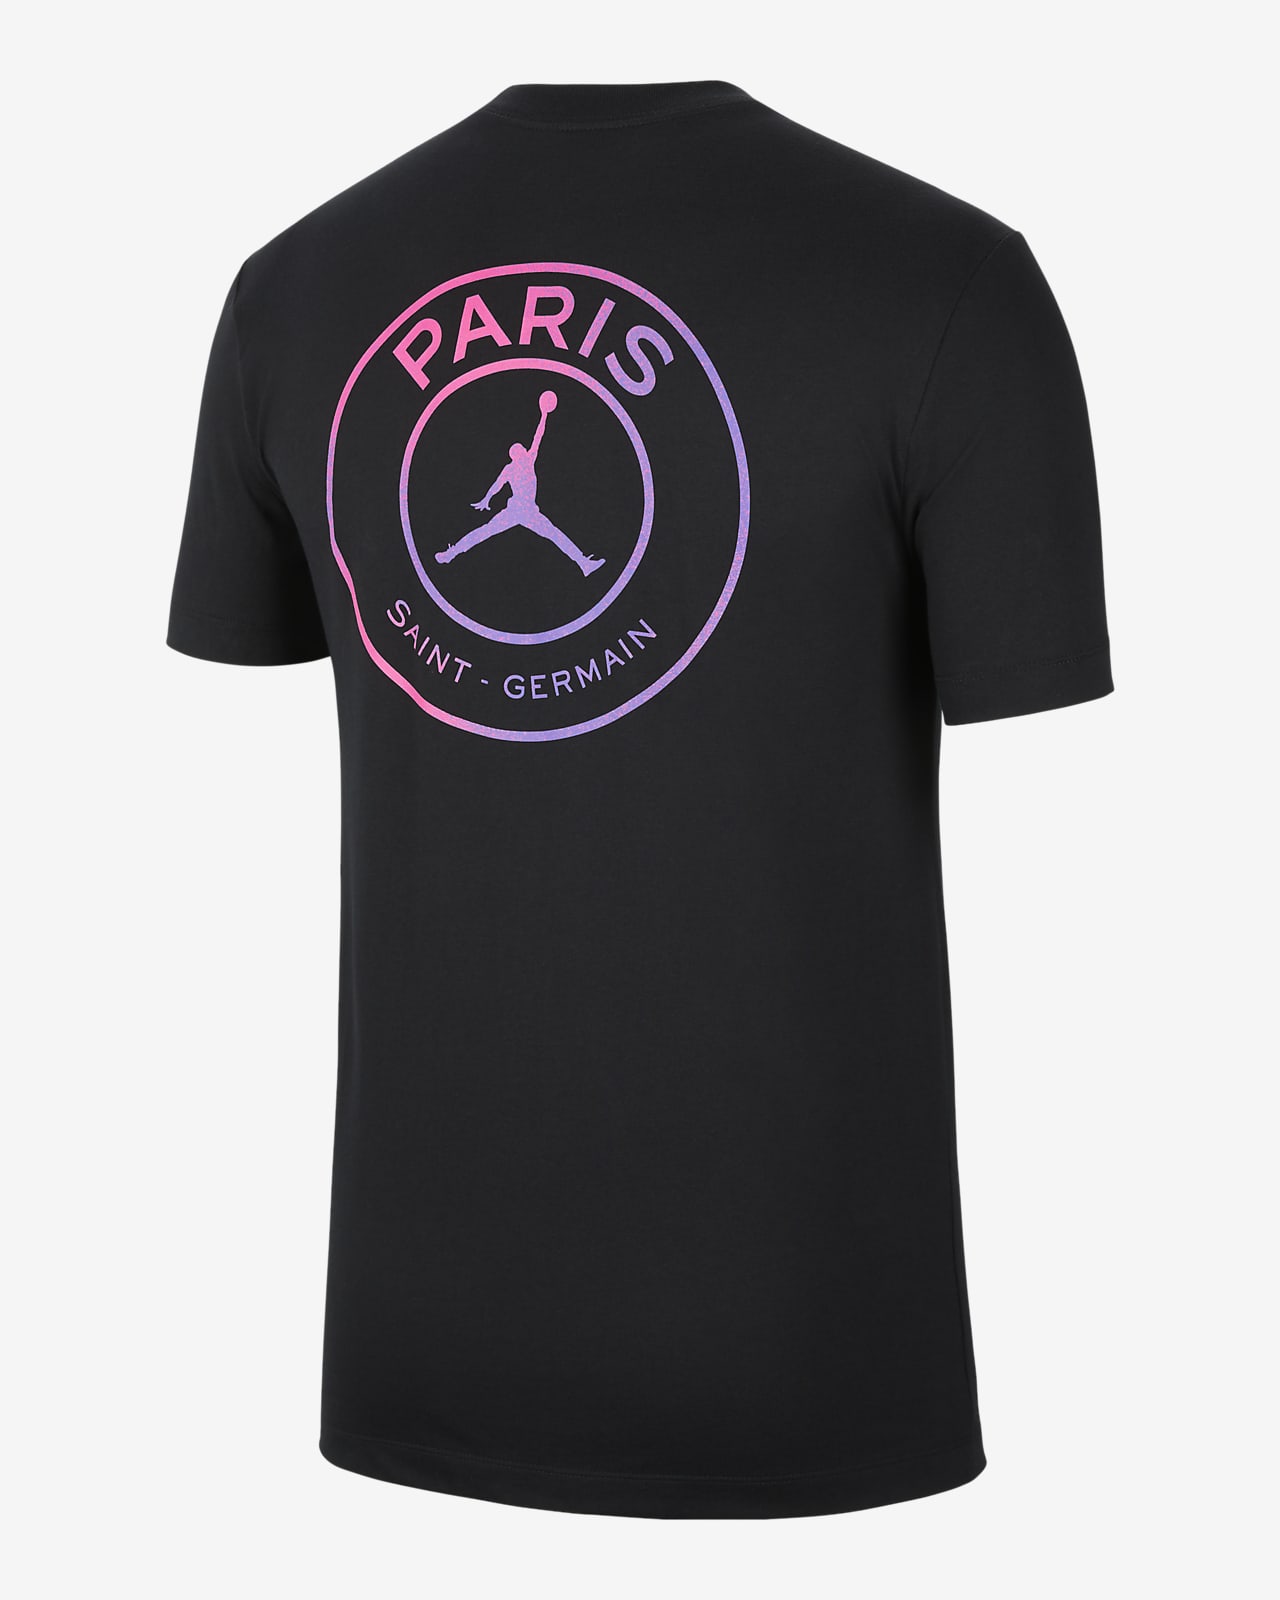 Paris Saint-Germain Logo Men's T-Shirt. Nike ZA